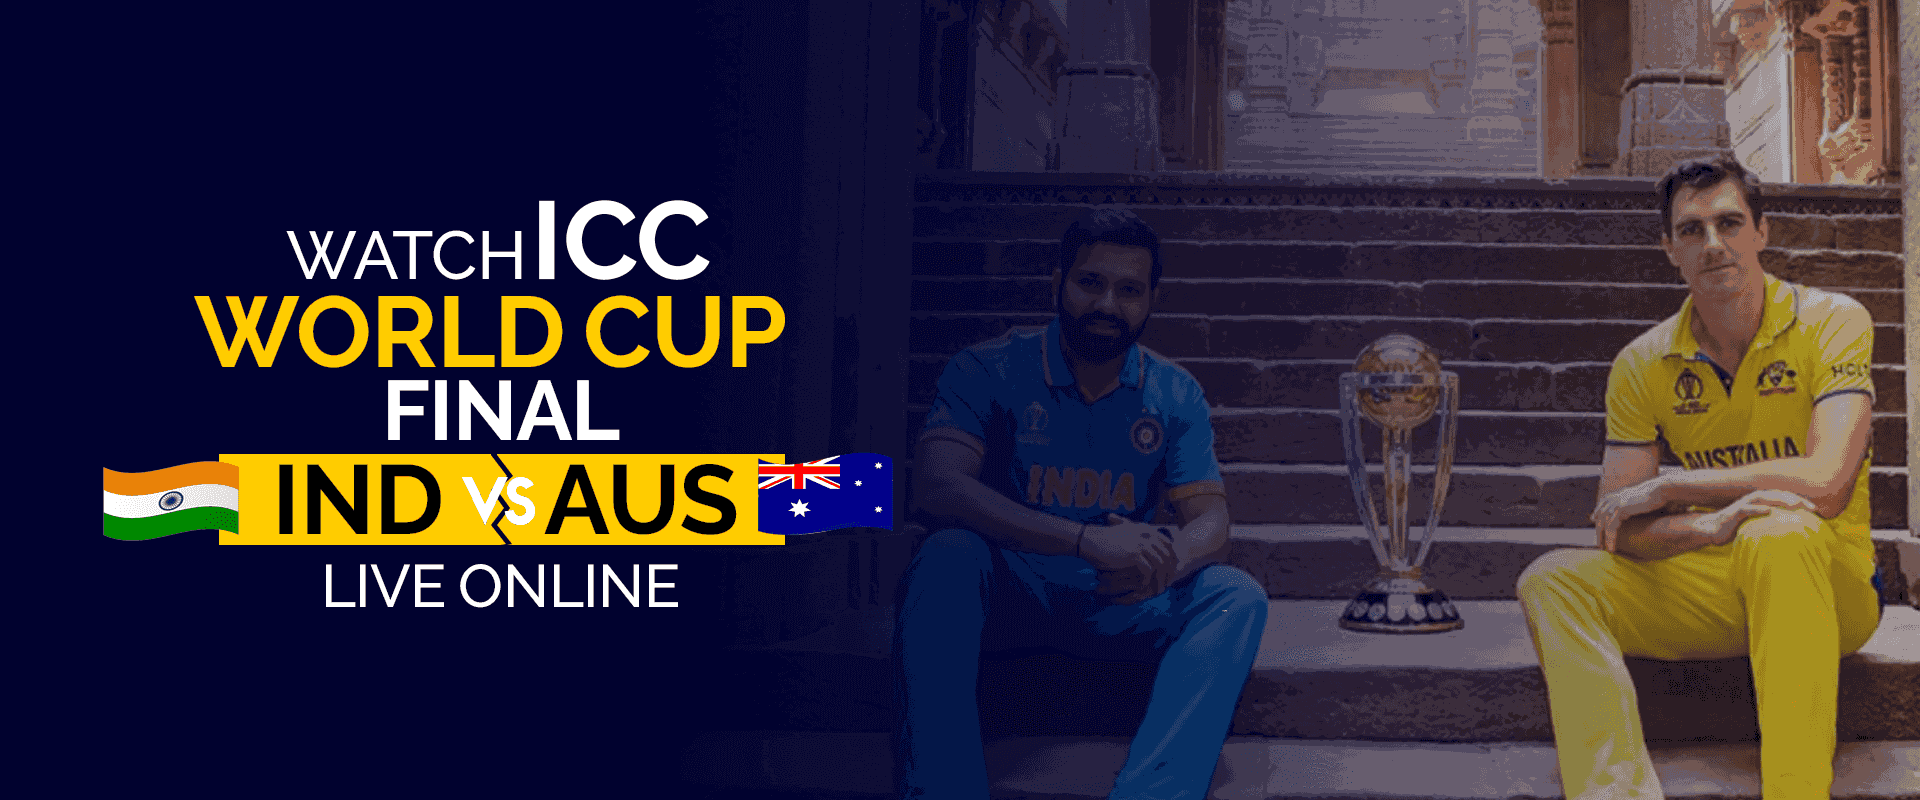 Watch ICC World Final IND vs AUS Live Online